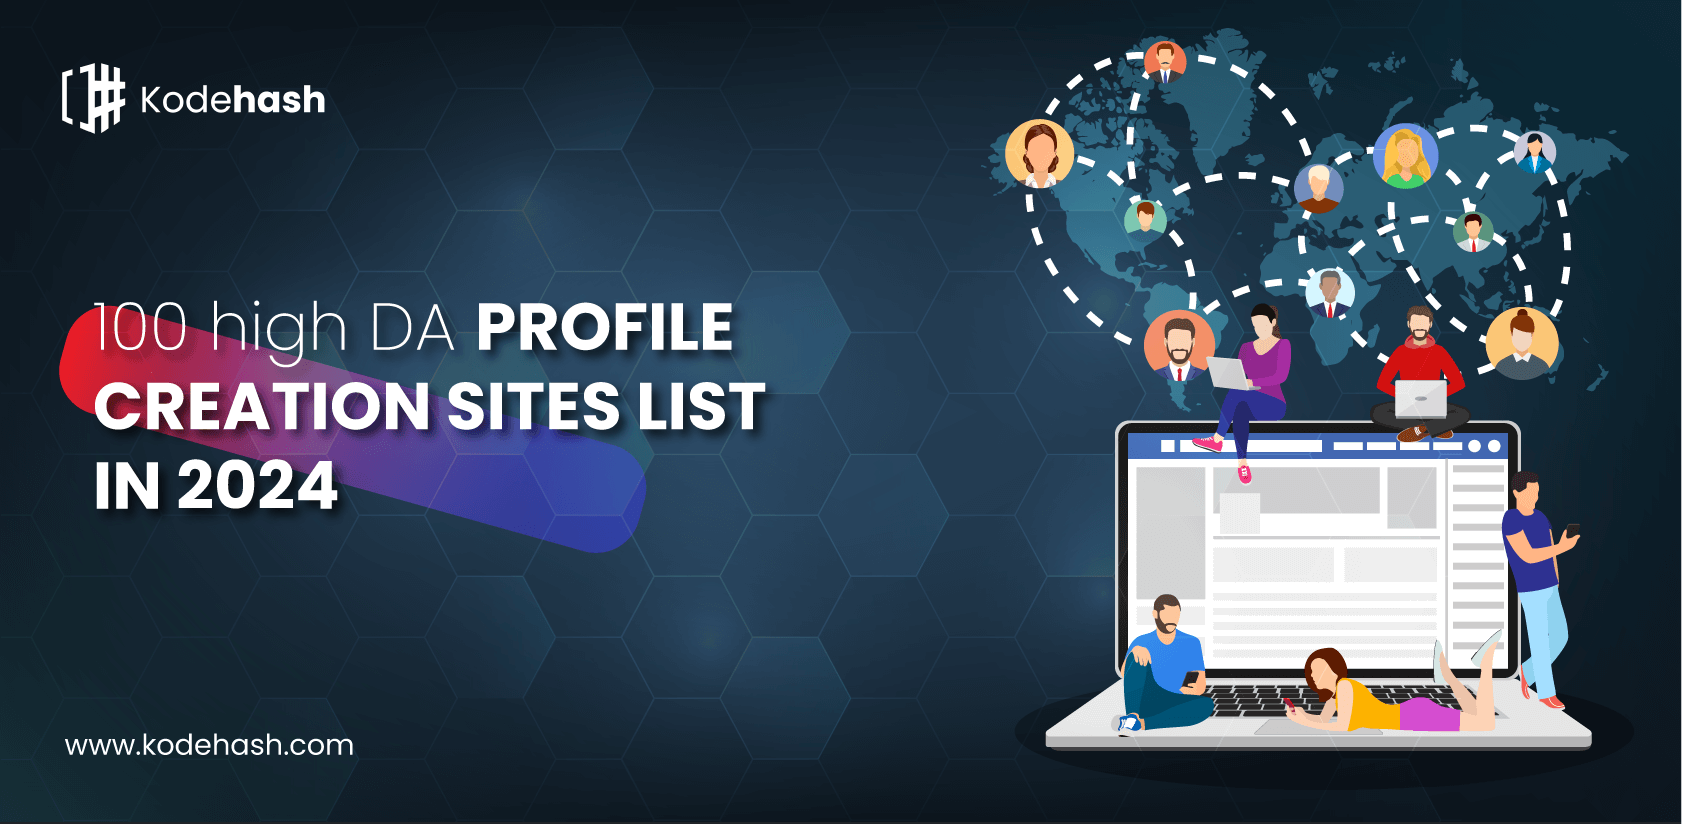 profile-creation-sites-list